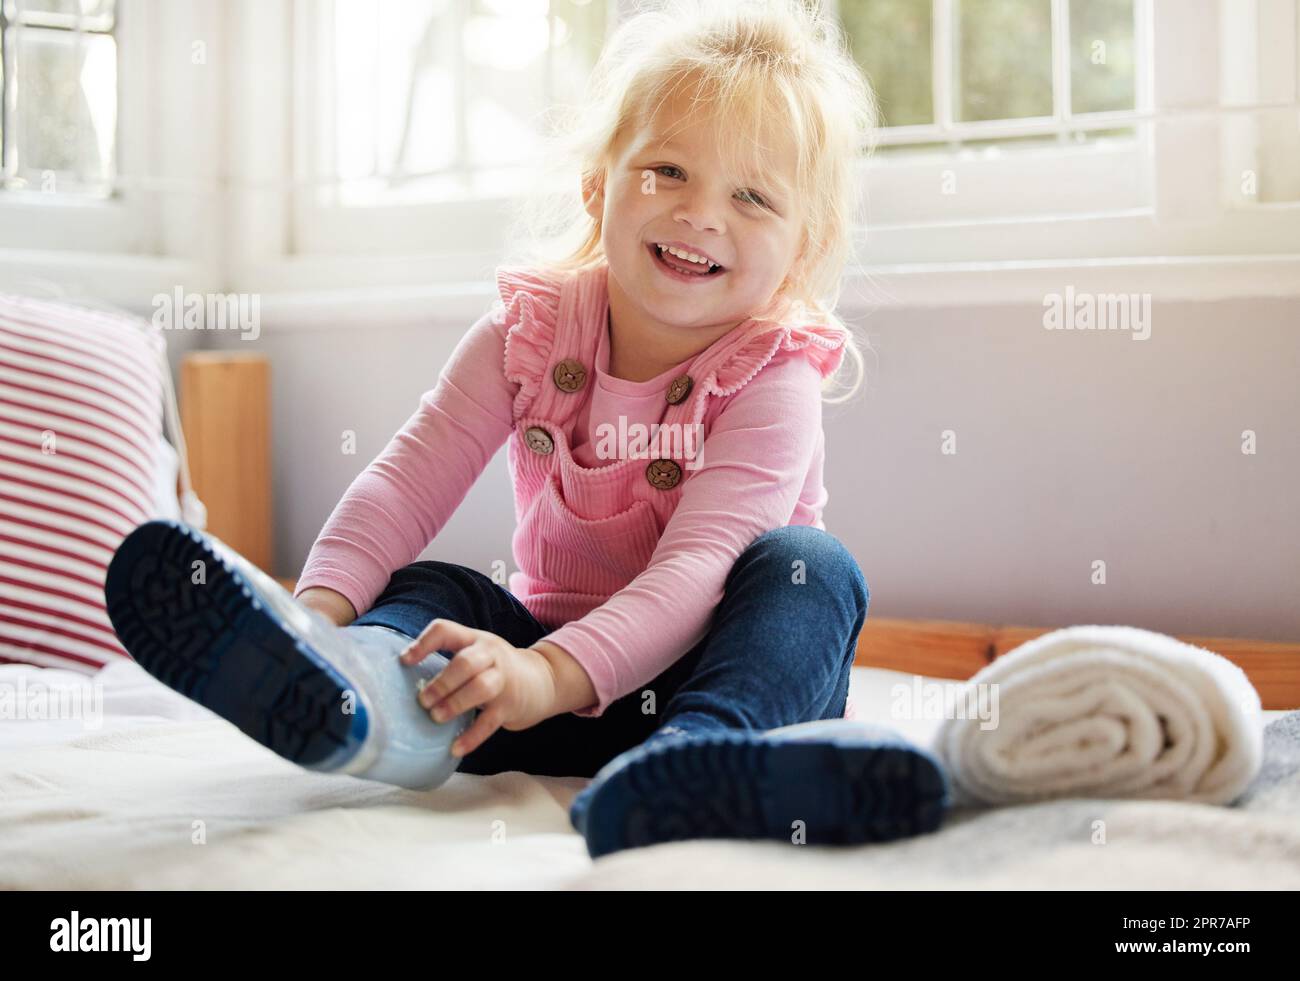 Ich bin bereit für ein Abenteuer. Ein kleines Mädchen, das zu Hause ihre Stiefel anlegt. Stockfoto